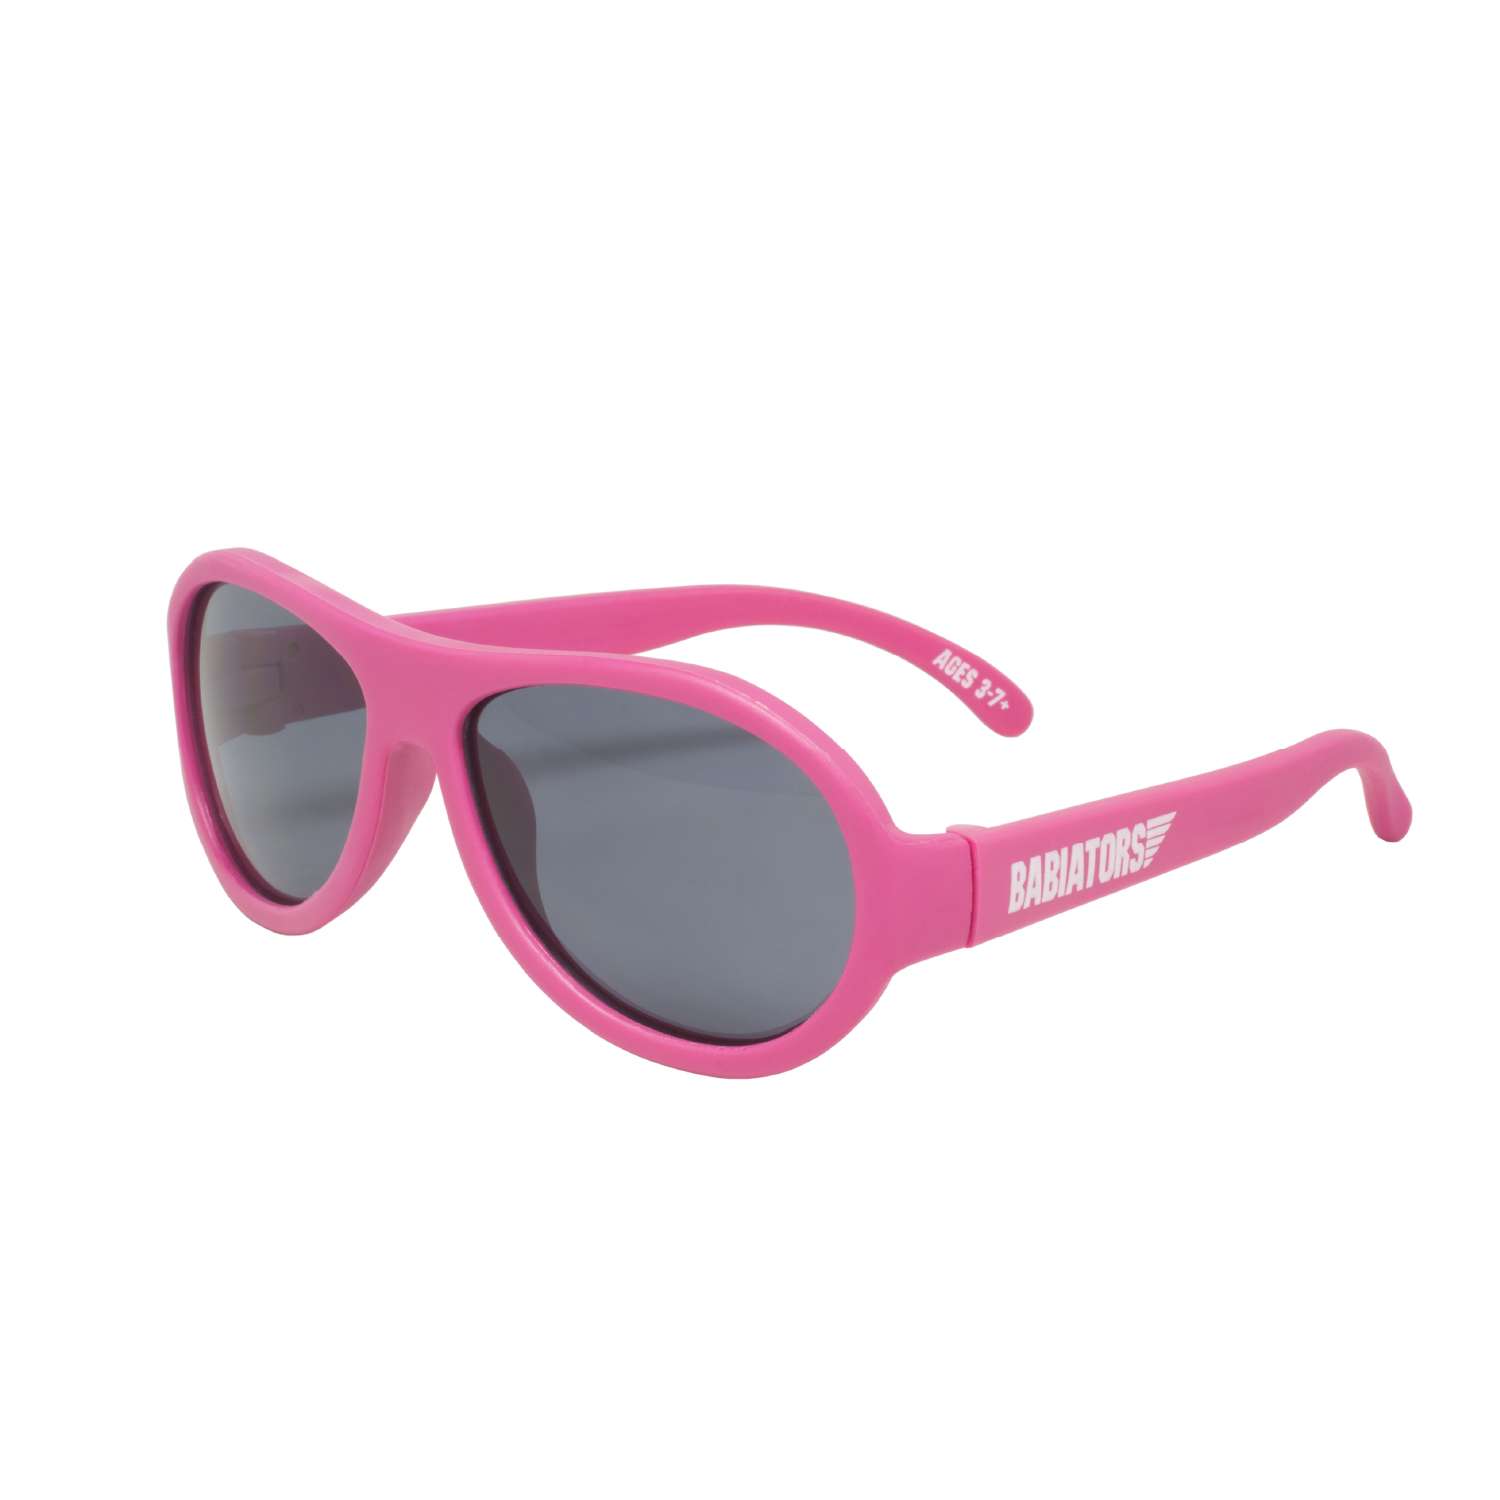 Солнцезащитные очки Babiators Aviator Попсовый розовый 3-5 BAB-047 - фото 1